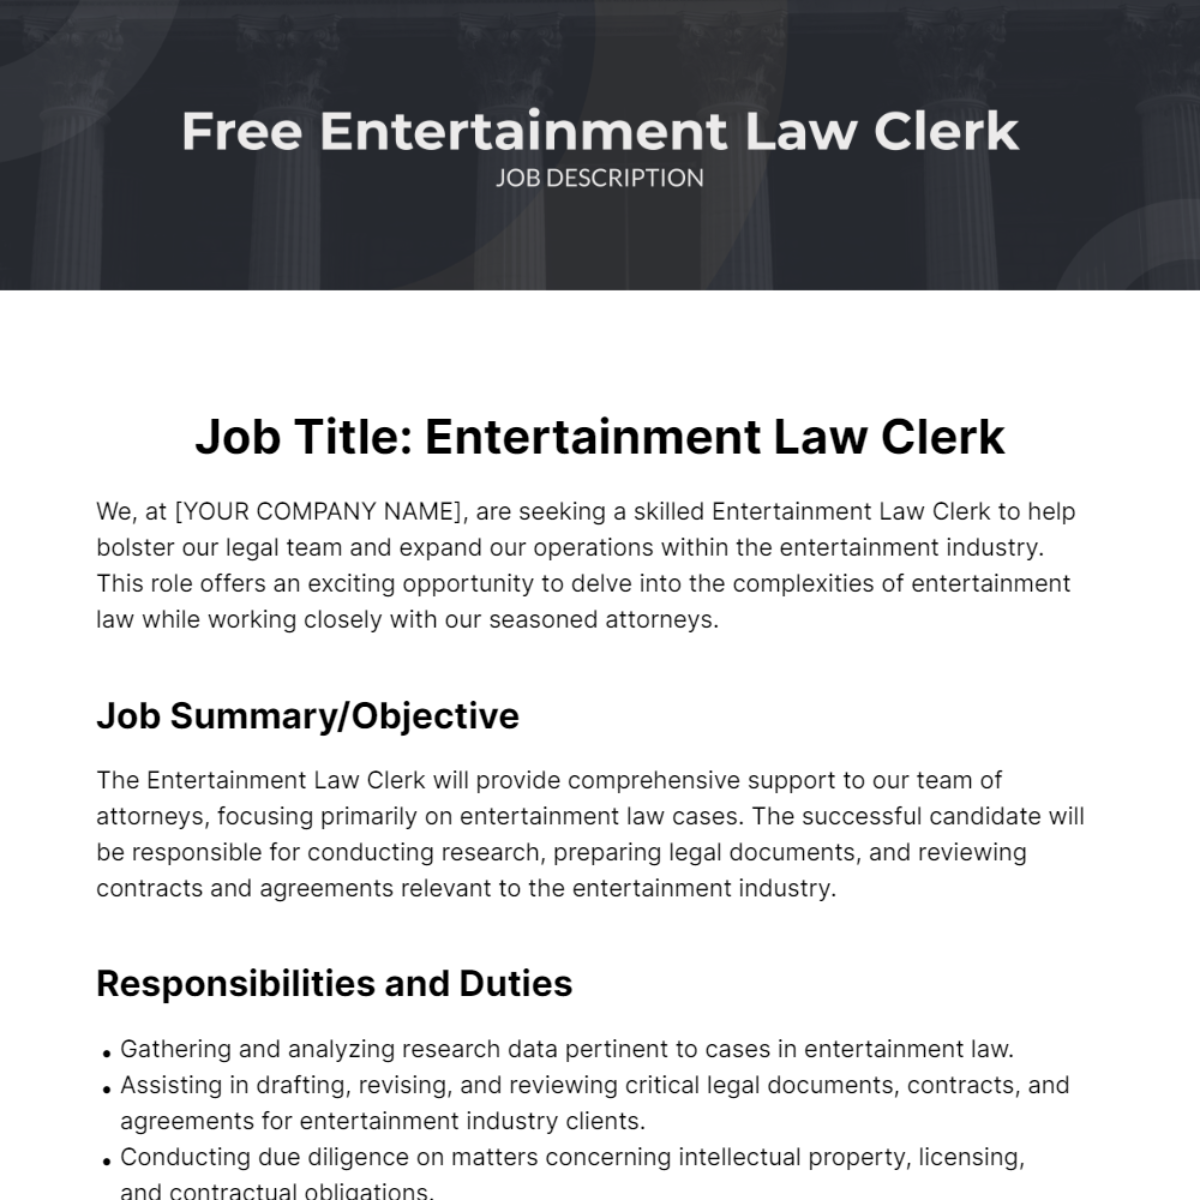 Free Entertainment Law Clerk Job Description Template